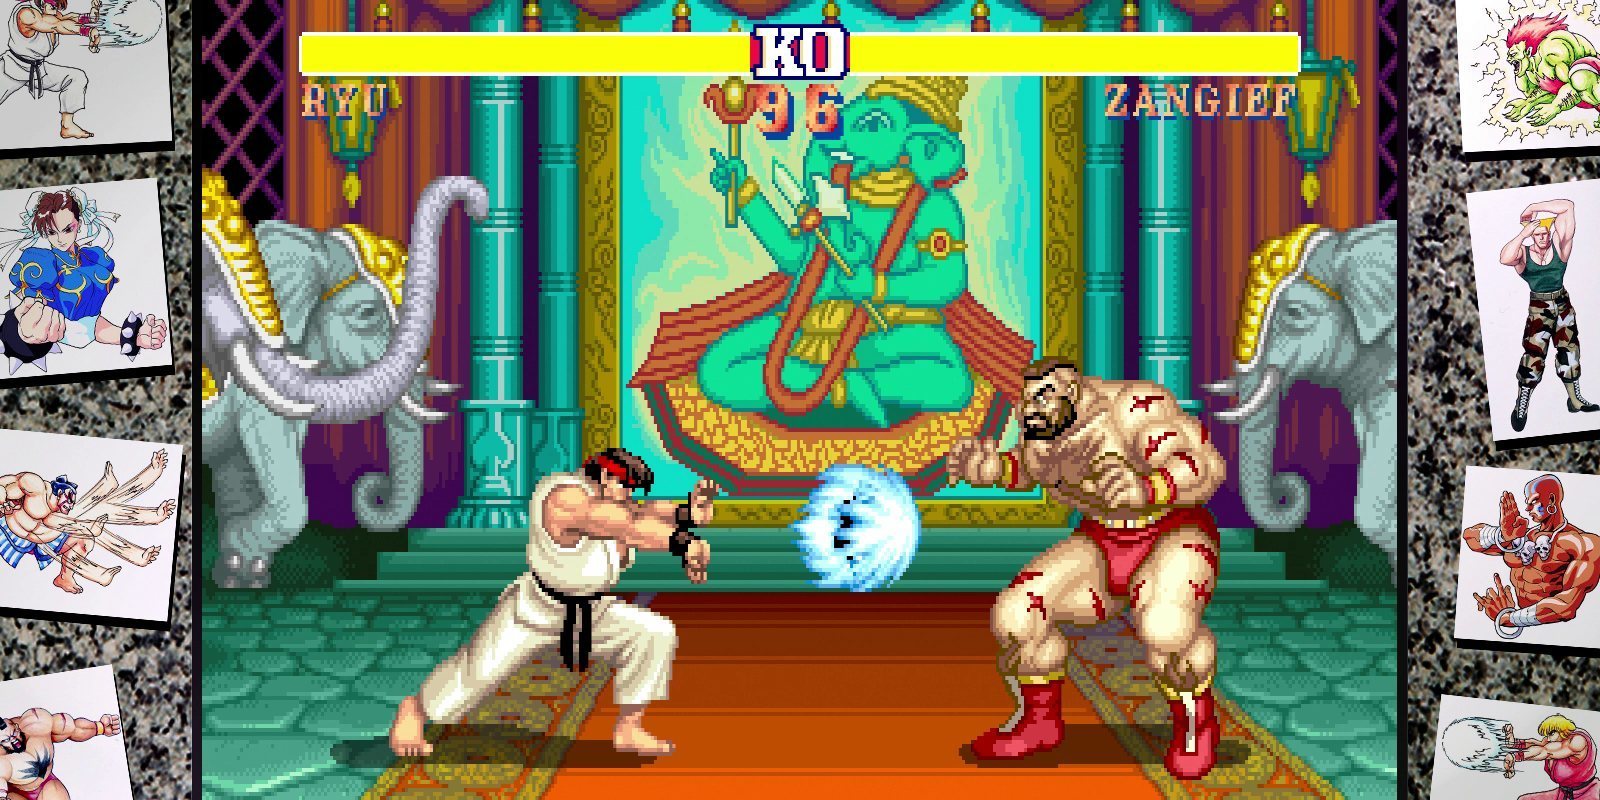 Impresiones de 'Street Fighter 30th Anniversary Collection', nostalgia por la lucha